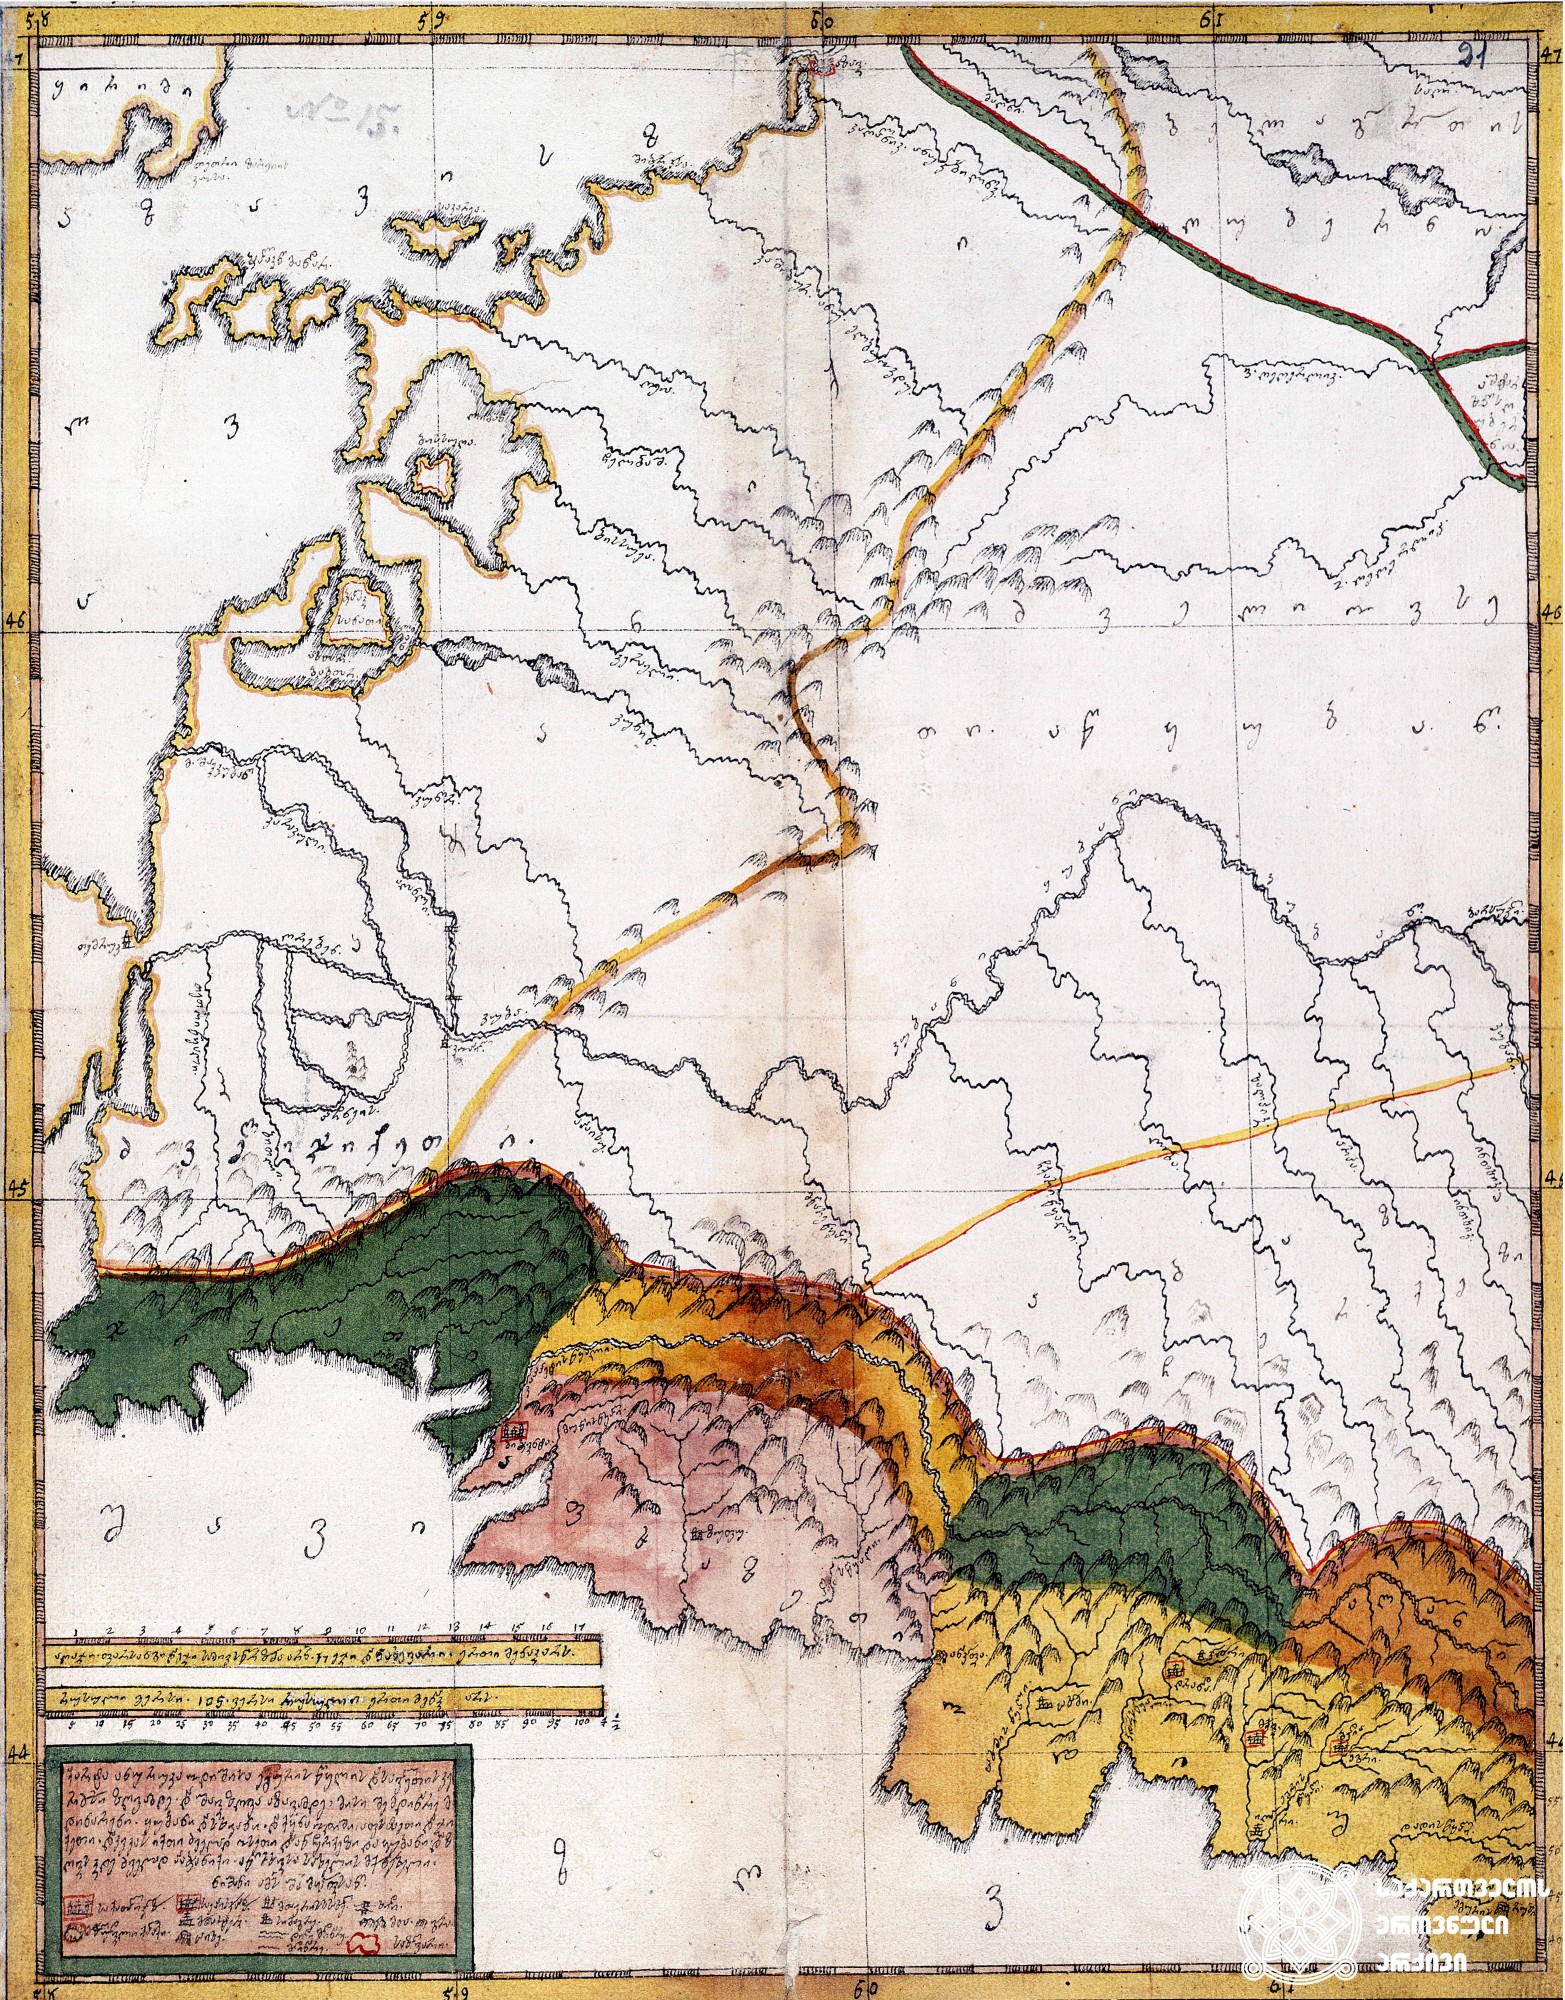 ვახუშტის ატლასი <br>
ოდიშის რუკა
Atlas of Vakhushti <br>
The map of Odishi

„ქარტა ანუ რუკა ოდიშისა ეგურის წყლის დასავლეთის კერძოსი ზღვამდე. და შავი ზღვა აზავამდე, მისი შემდინარე მდინარენი ყუბანი და სხვანი და ქვეყანა ოდიში, აფხაზეთი და ჯიქეთი და კავკას იქითი ძველად ოსეთი და აწ ჩერქეზი და ყუბანი და ზღვის კიდე ძველად პაჭანიქი არ სხვისა სახელის მქონებელი“.